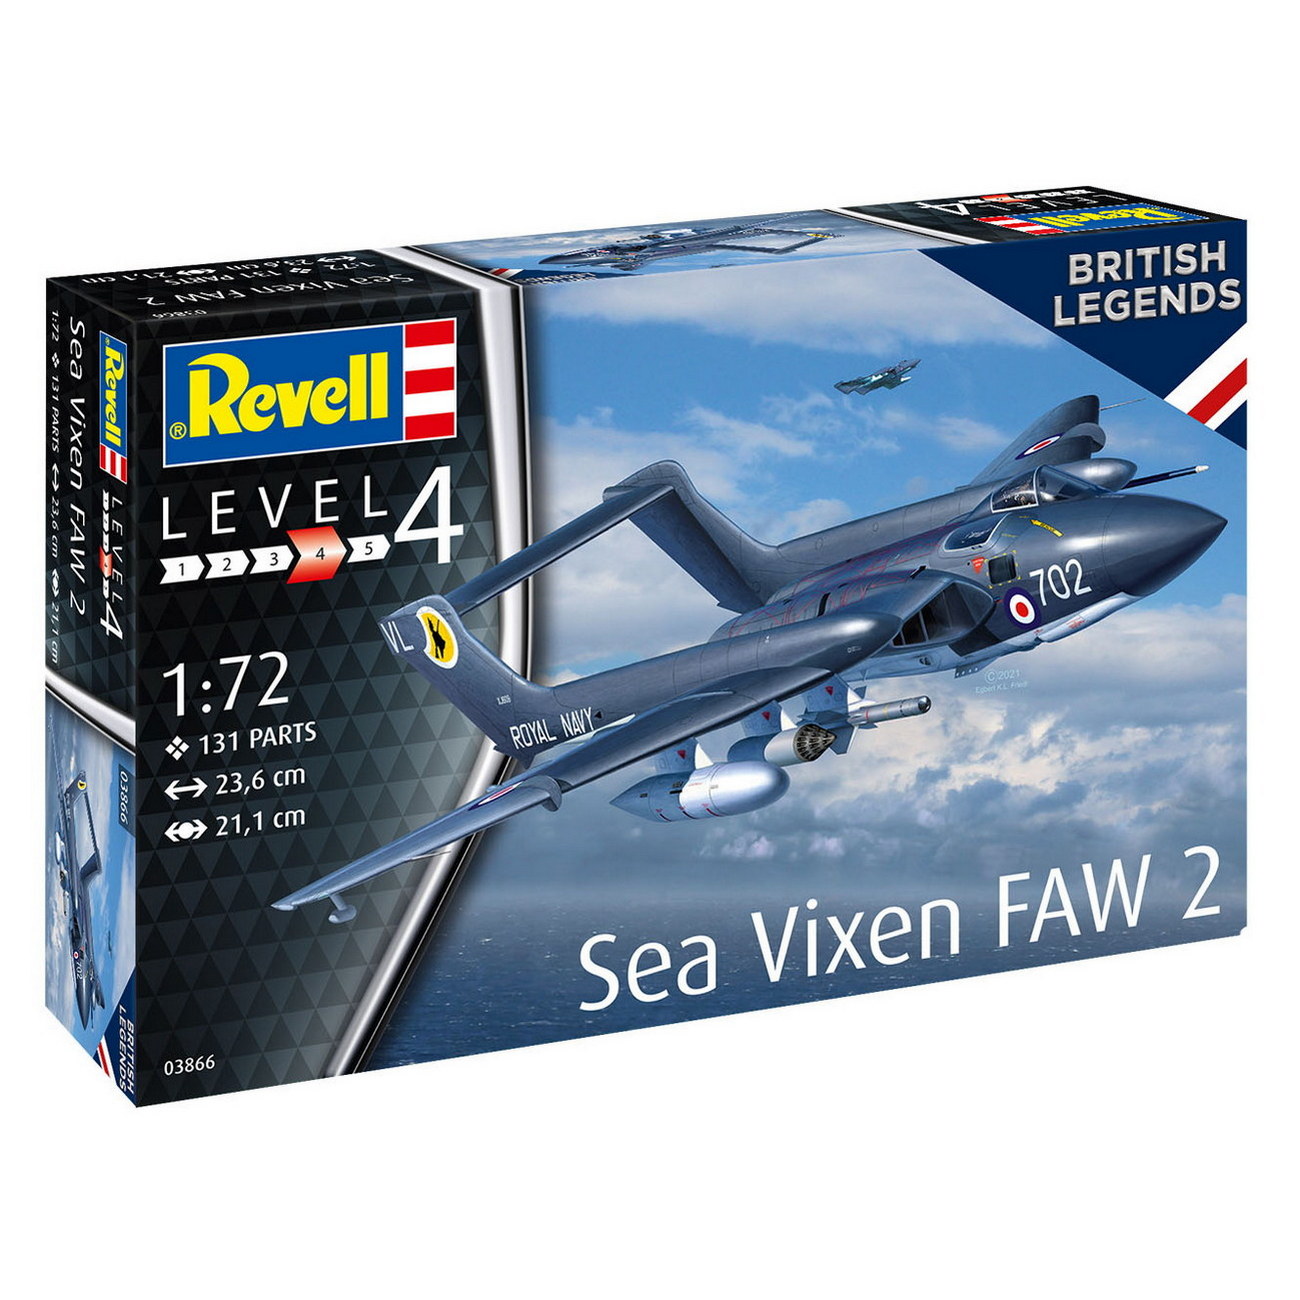 Sea Vixen FAW 2 (03866)